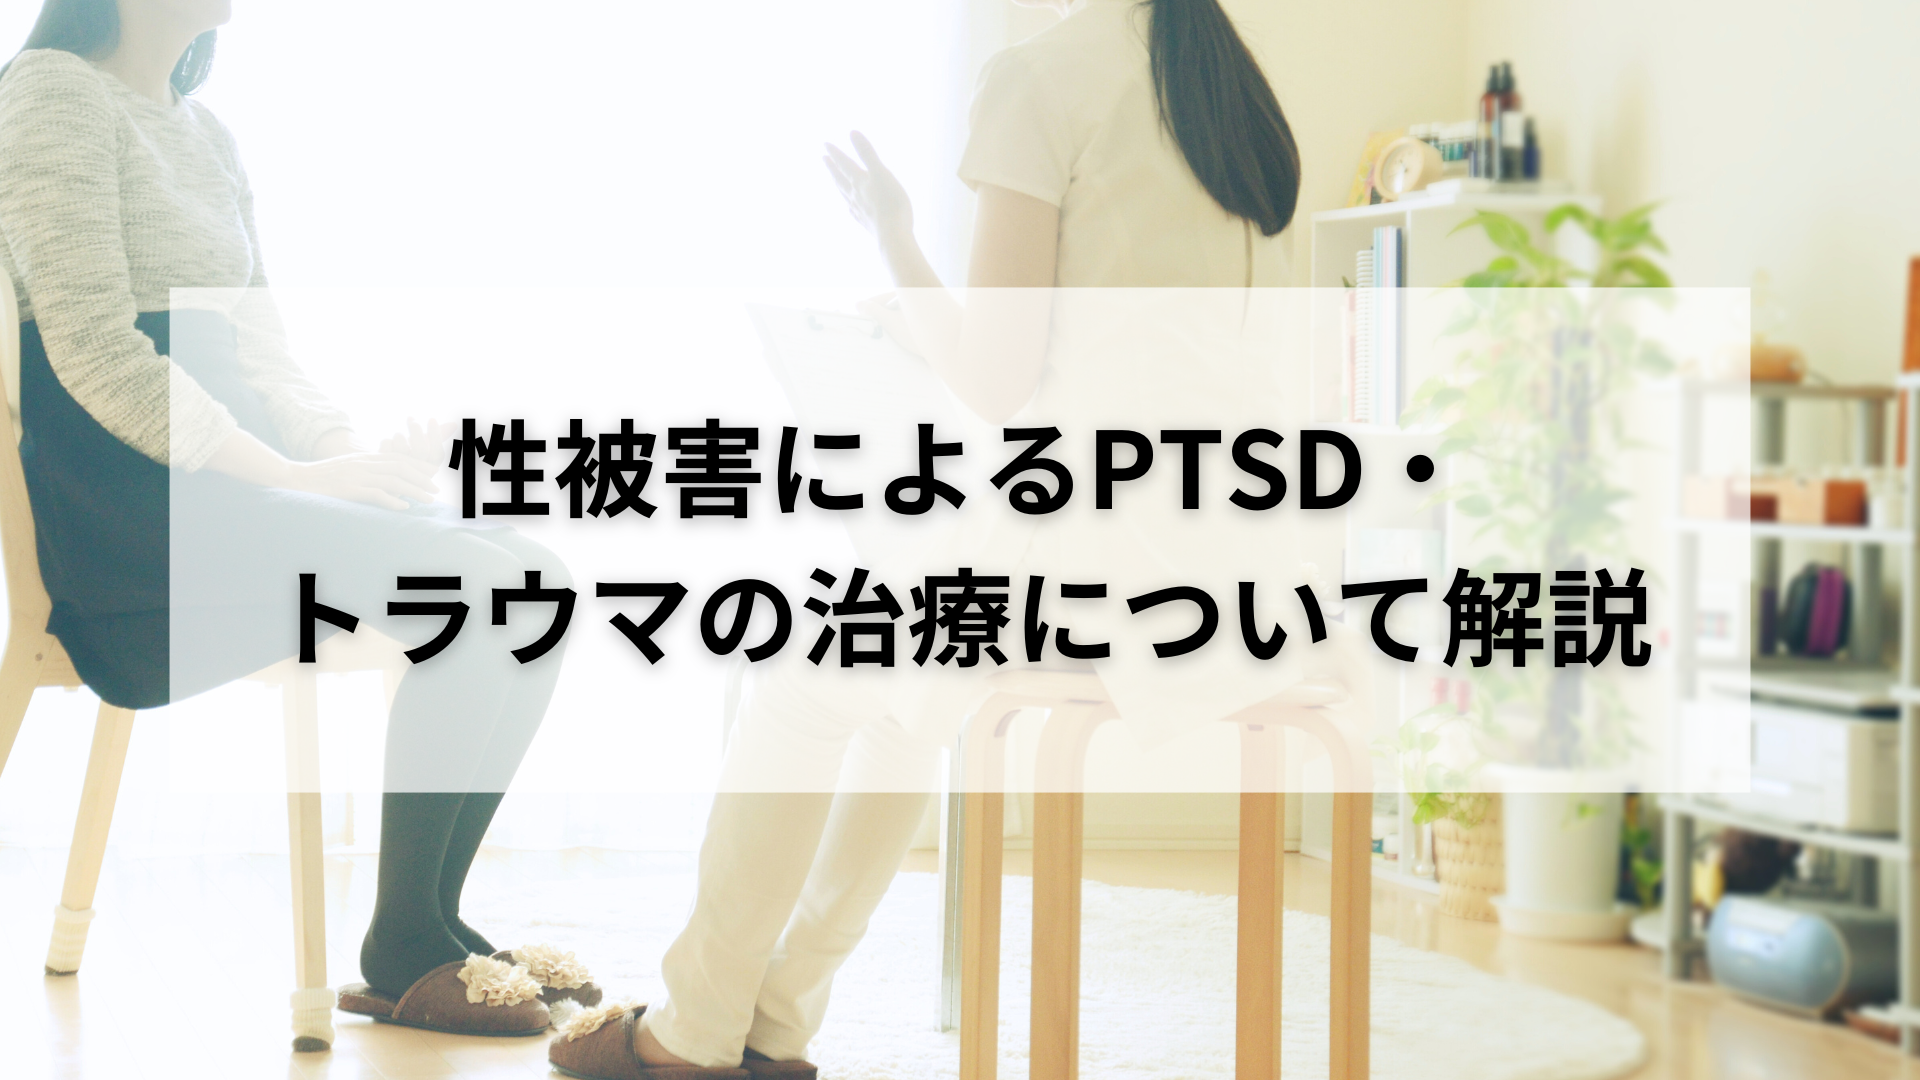 性被害による【PTSD・トラウマ】治療について詳しく解説